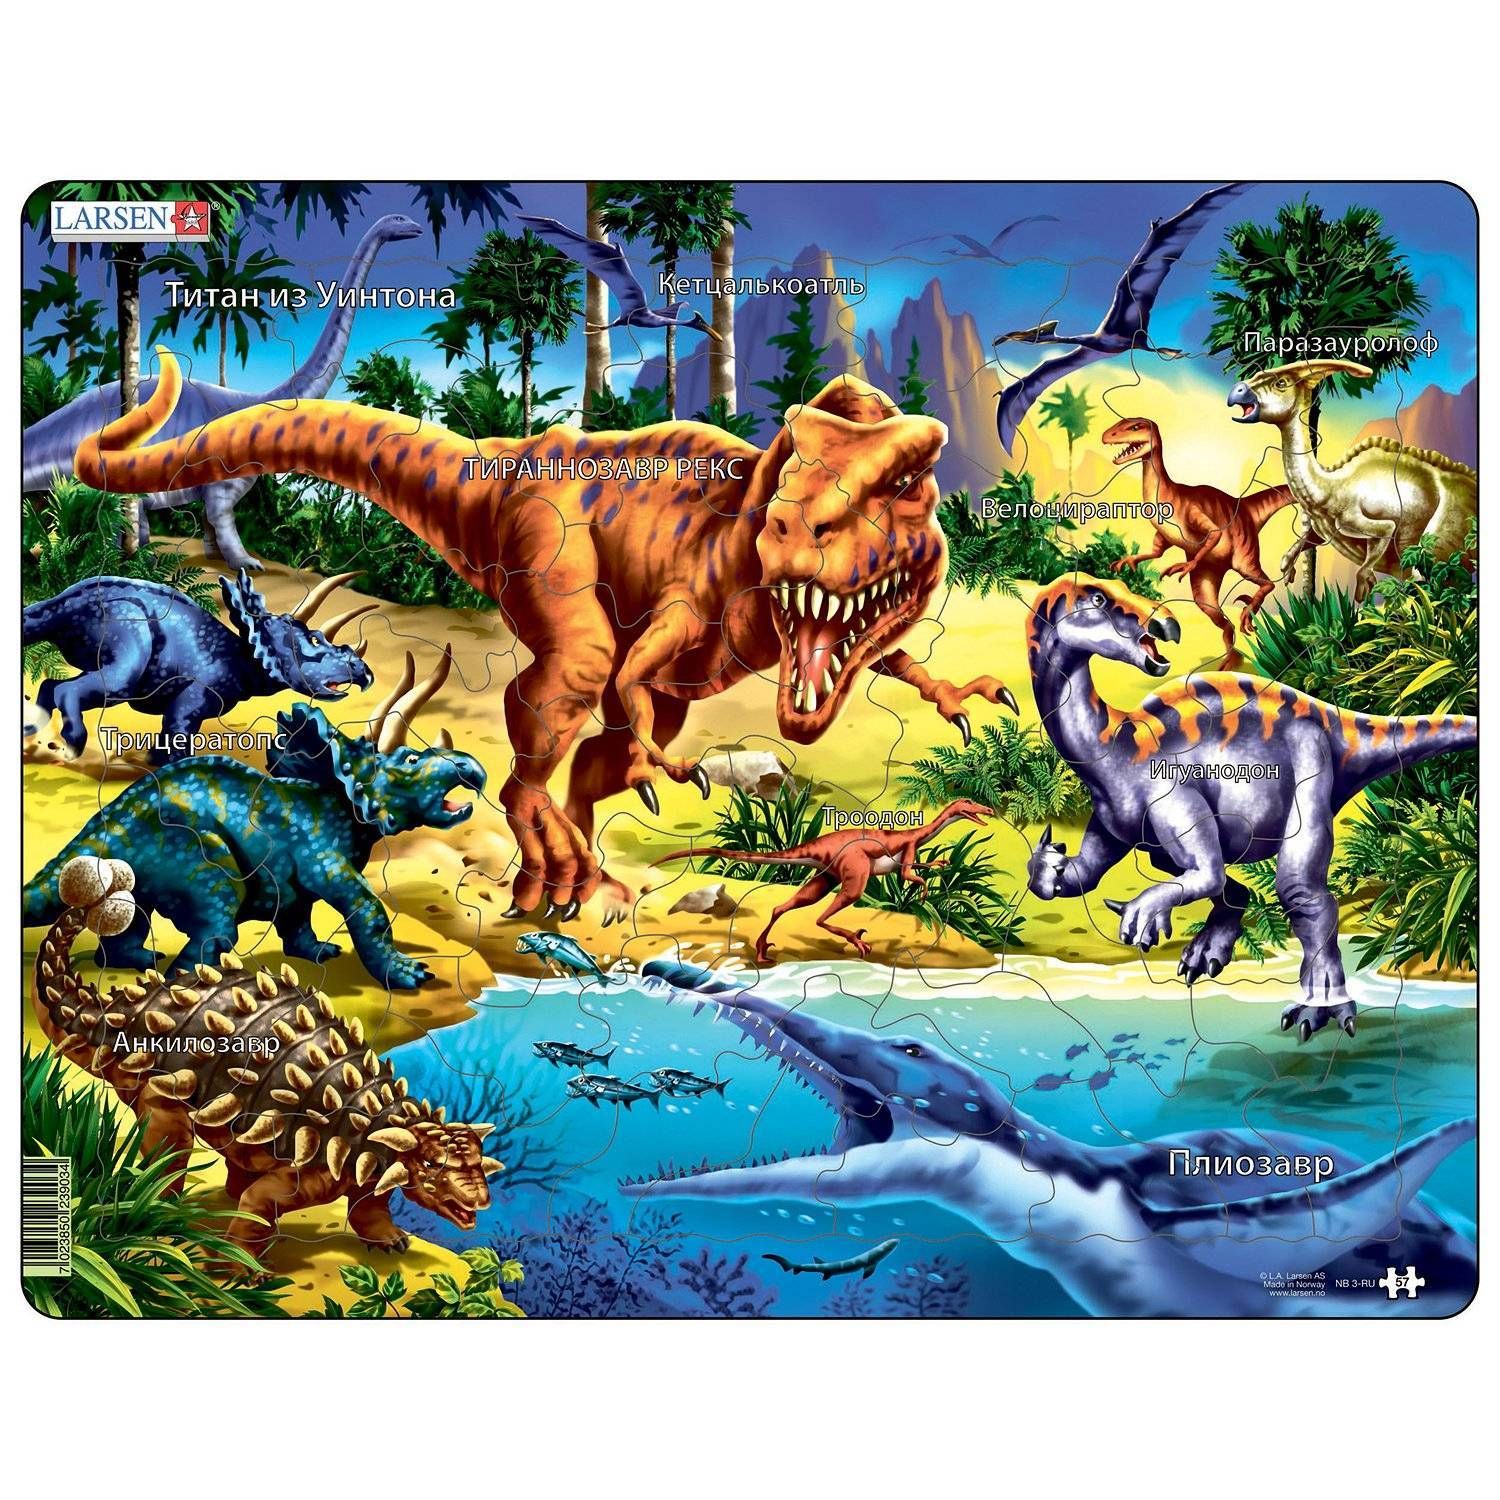 Динозавры Картинки И Названия